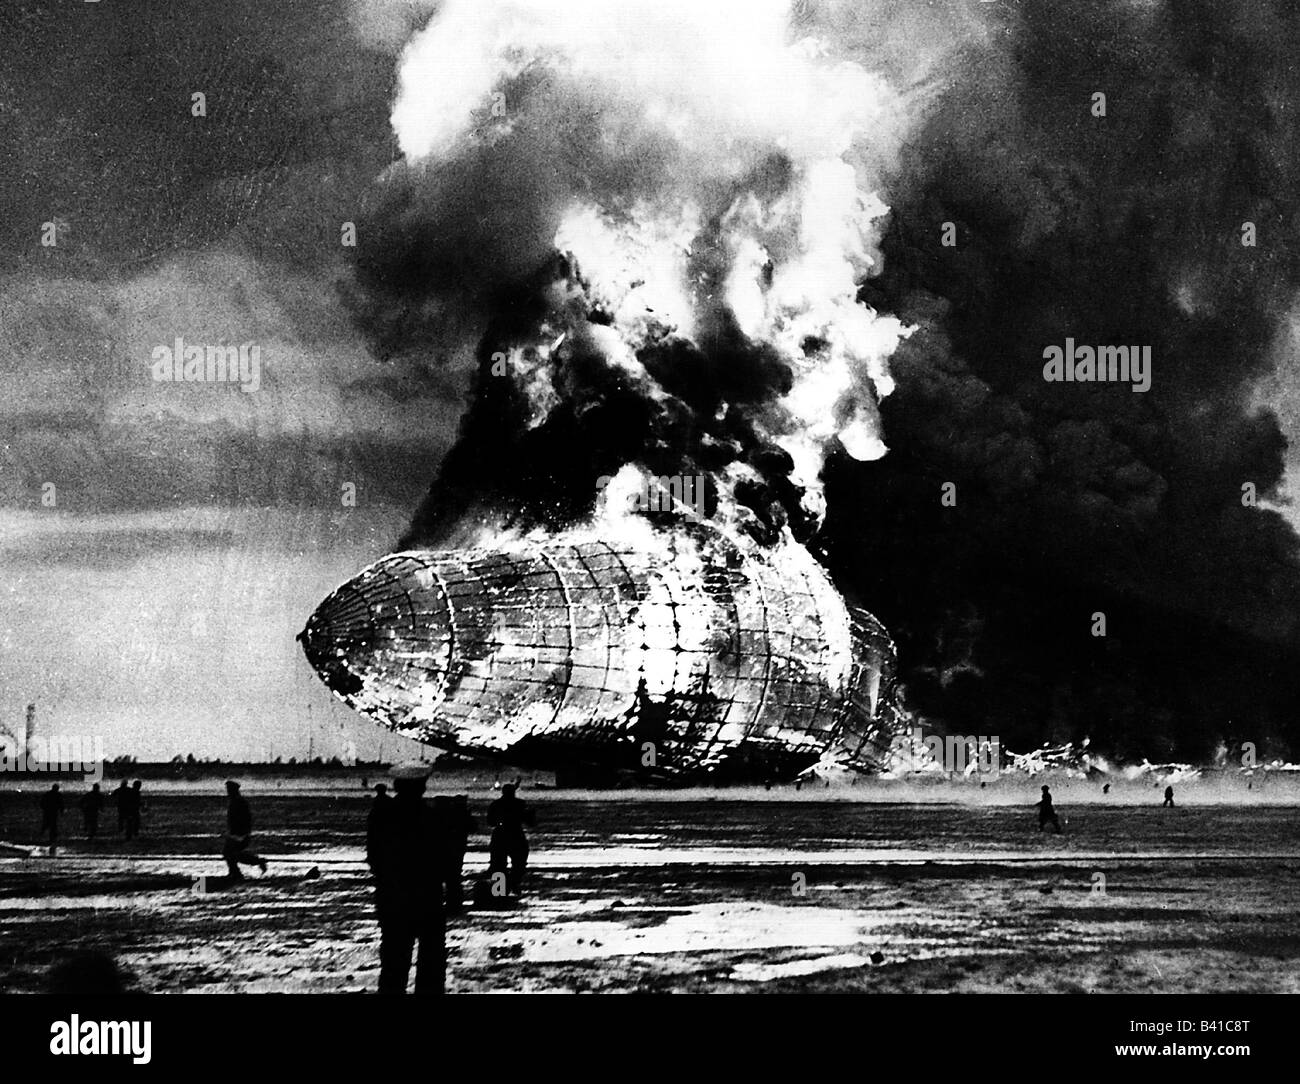 Trasporti/trasporti, aviazione, aeronavi, Zeppelin, disastro della LZ 129 'Hindenburg', Lakehurst, New Jersey, 6.5.1937, esplosione, , Foto Stock